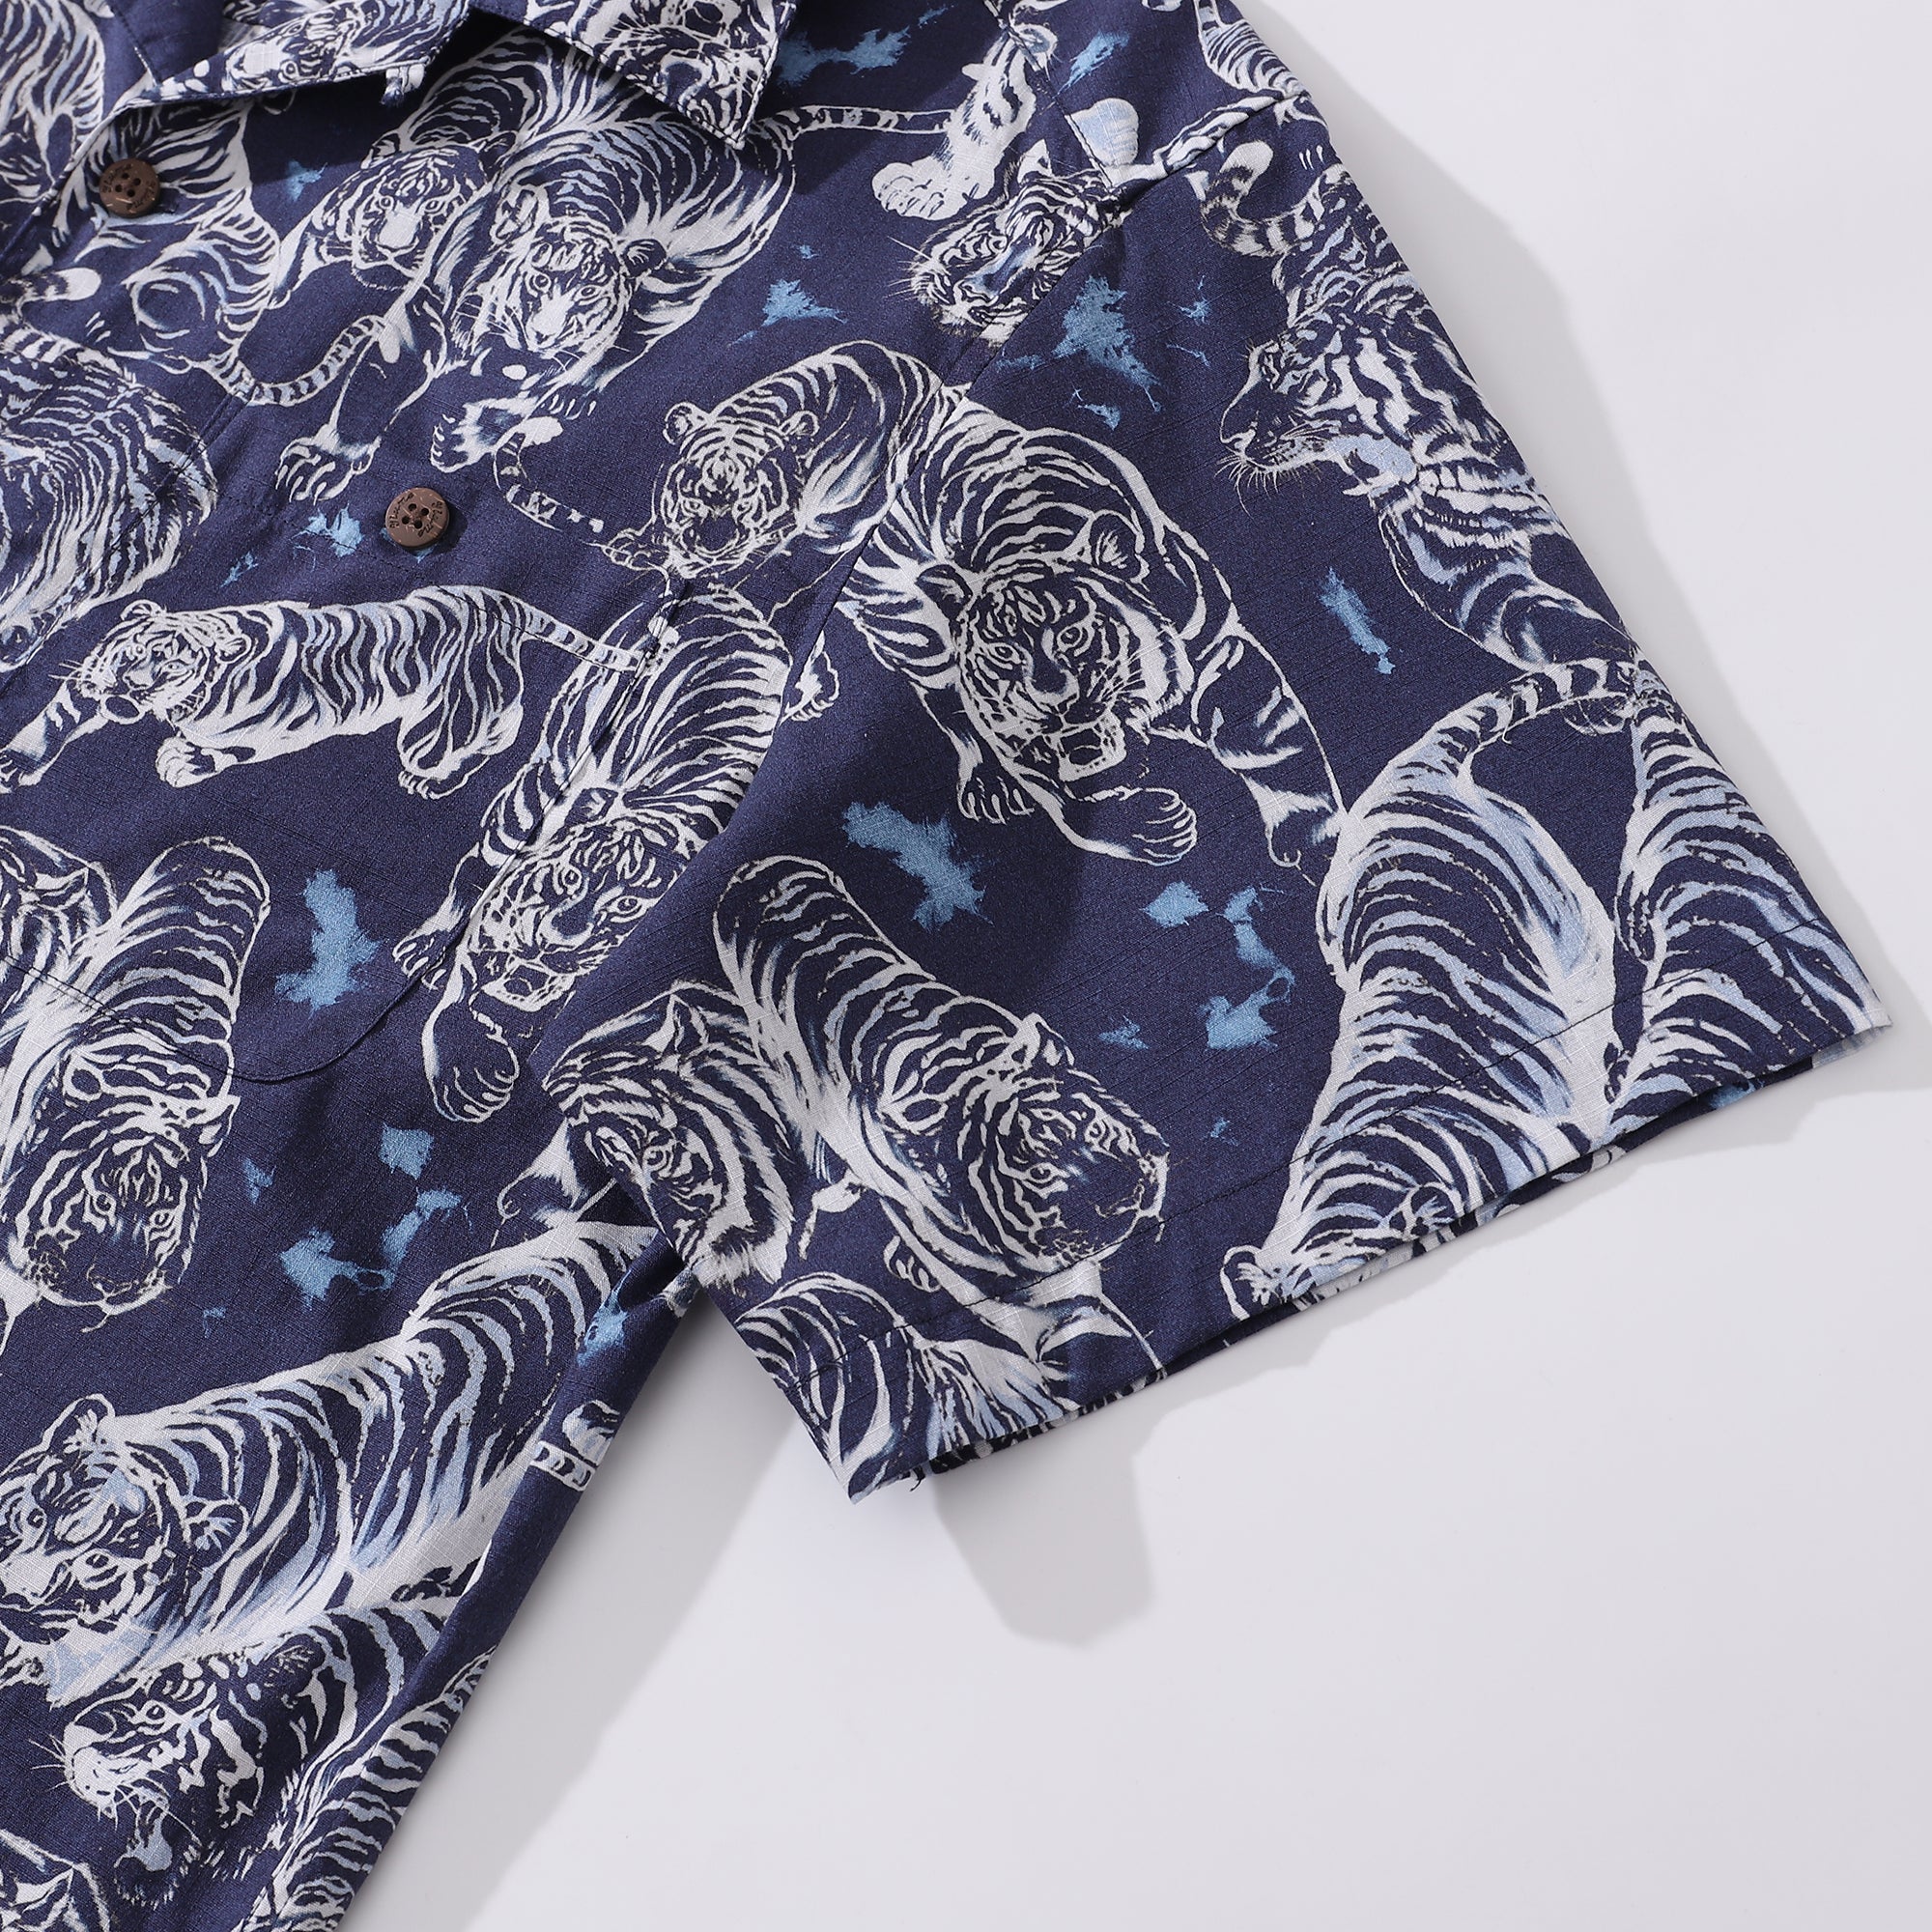 Hawaiian Shirt For Men Tiger King Contest Print Shirt Camp Collar 100% Cotton